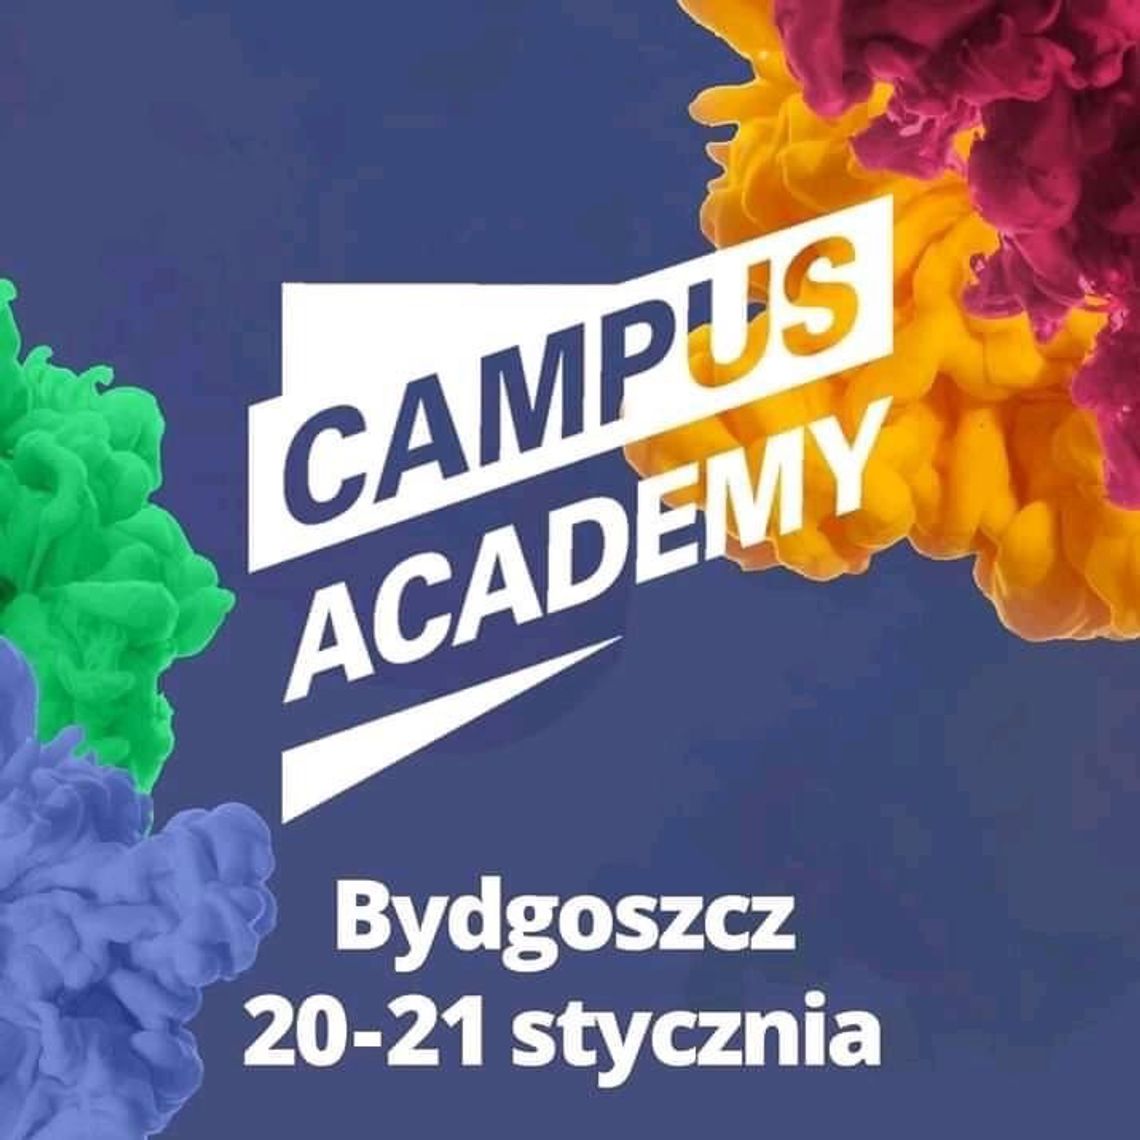 Rafał Trzaskowski przyjeżdża do Bydgoszczy. Rozpoczyna się Campus Academy